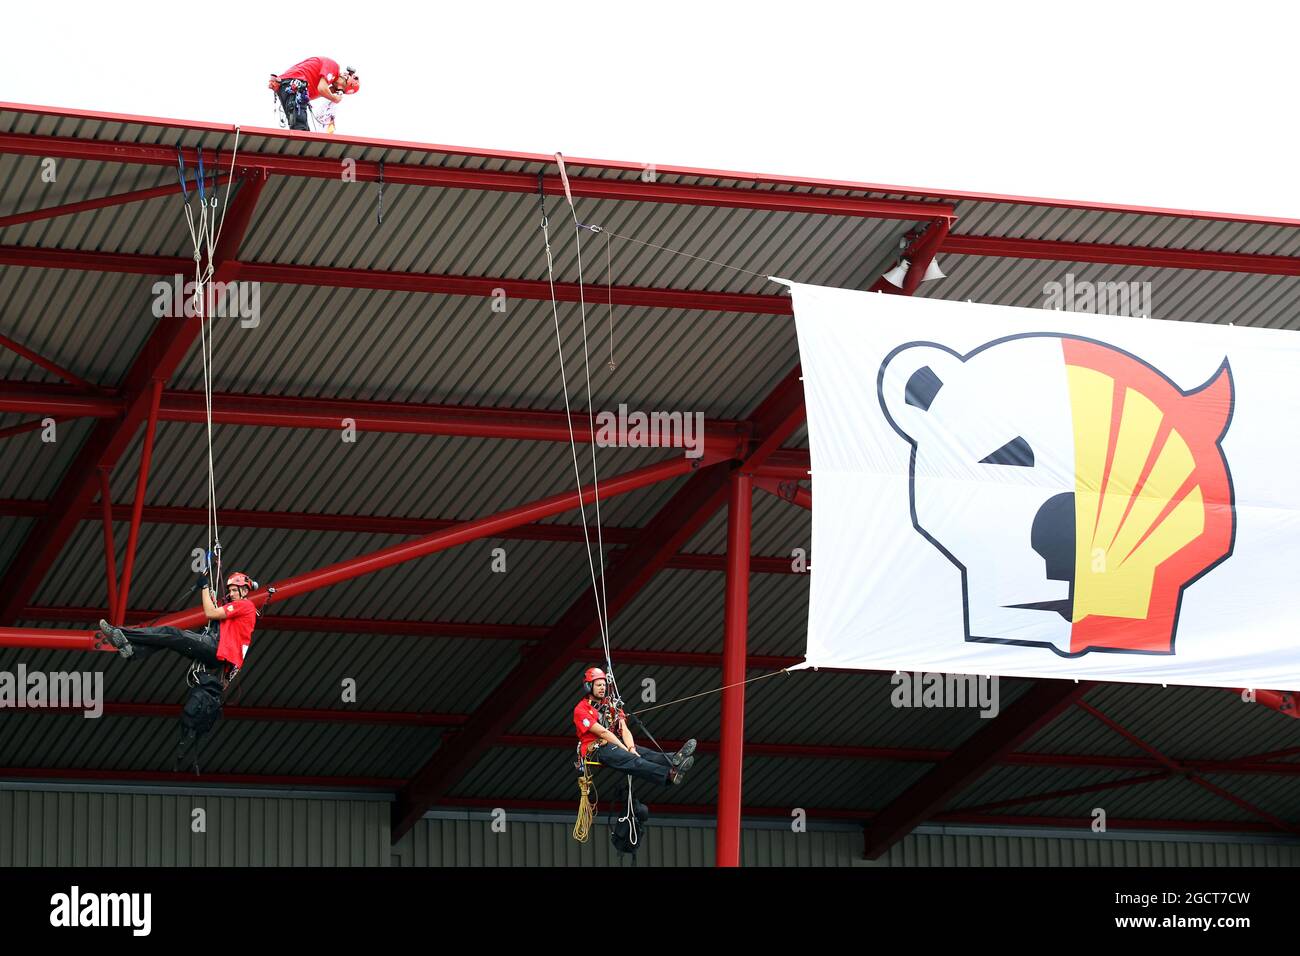 Greenpeace protestiert gegen die Renntitelsponsoren Shell auf dem Dach der Haupttribüne. Großer Preis von Belgien, Sonntag, 25. August 2013. Spa-Francorchamps, Belgien. Stockfoto